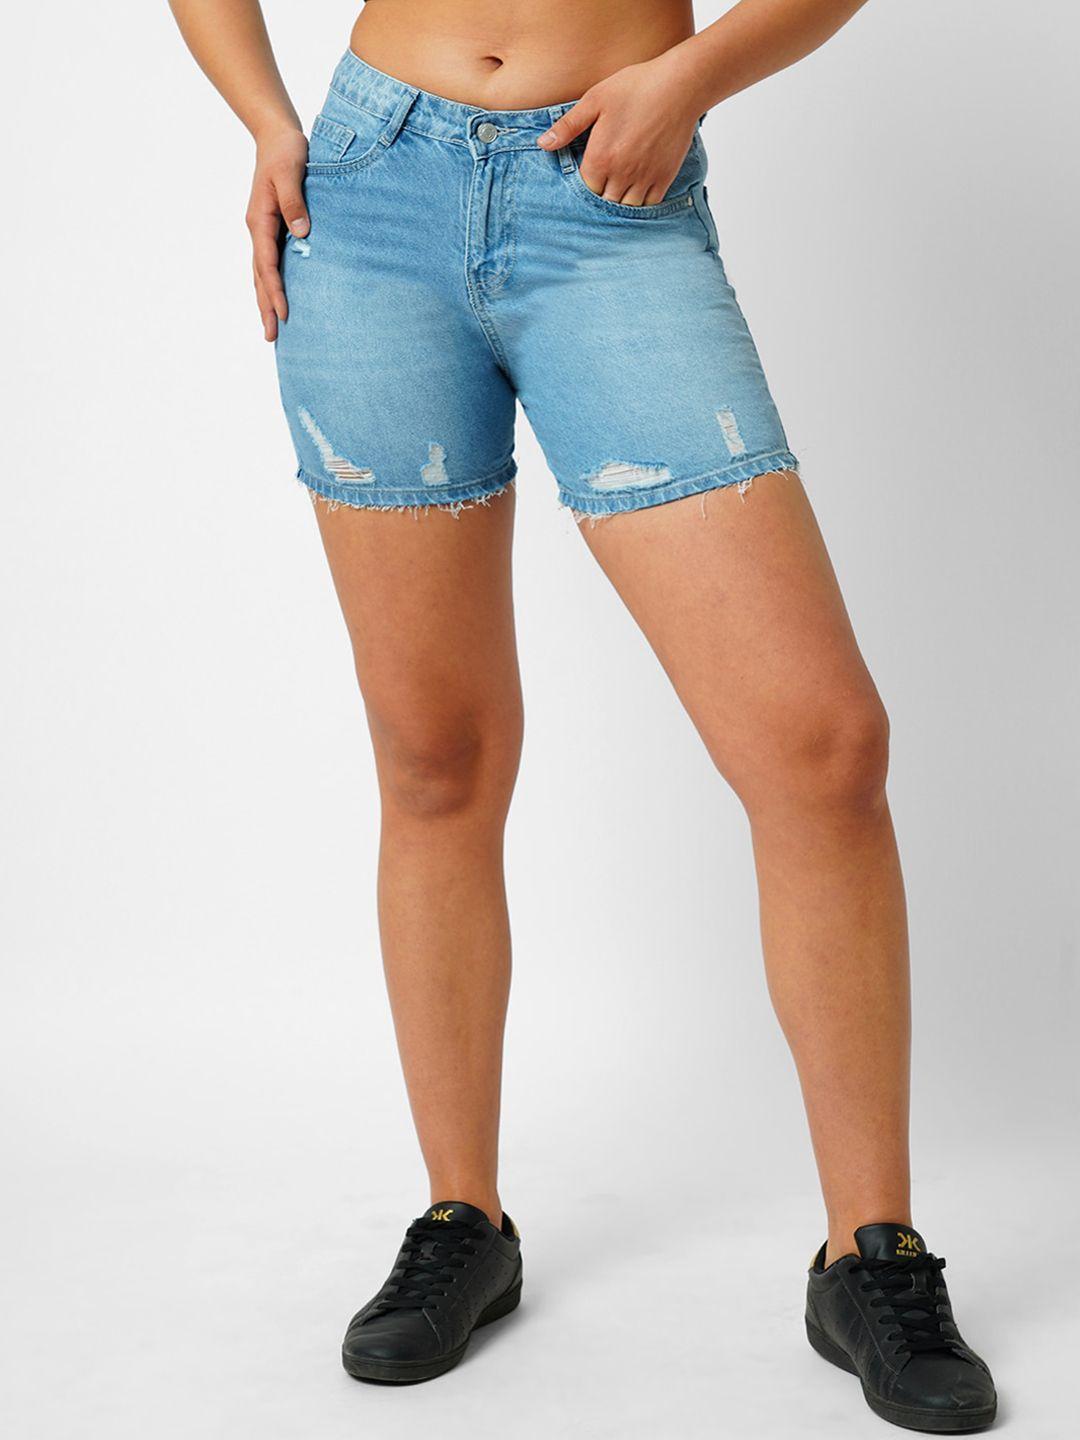 kraus jeans slim fit high-rise denim shorts